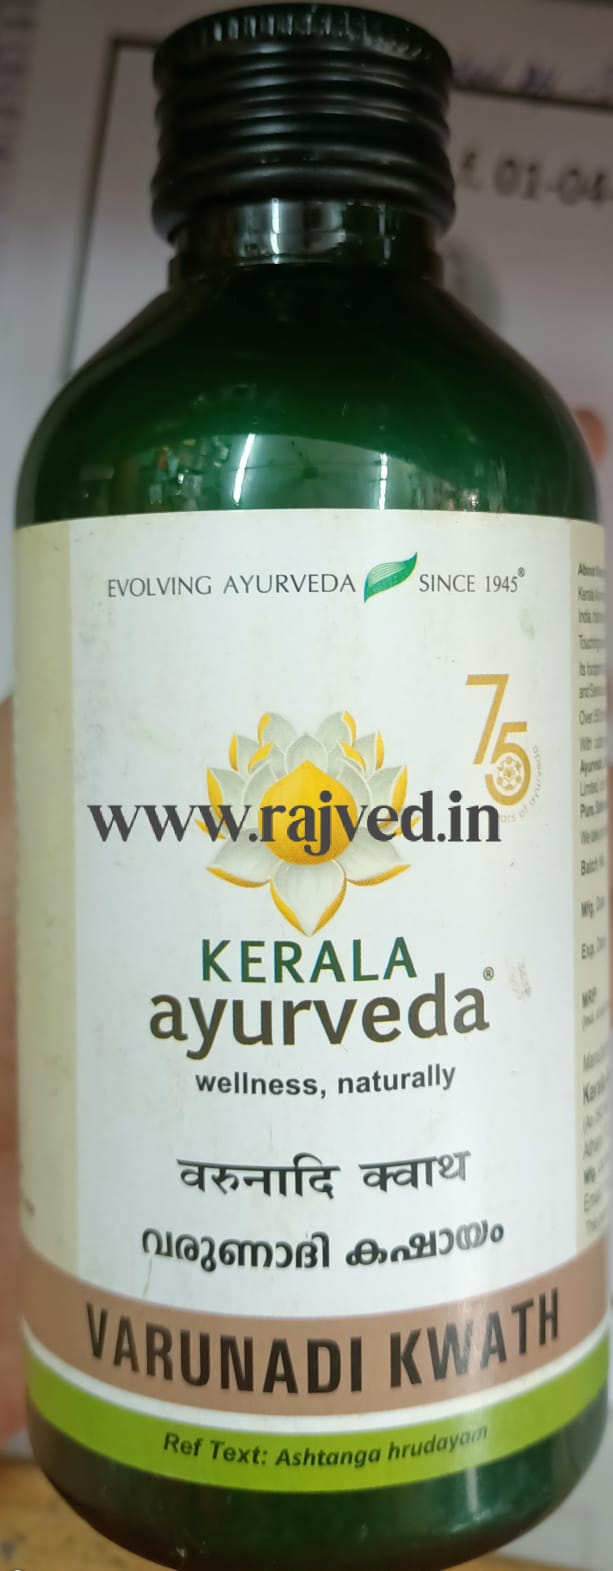 varunadi kwath 200 ml Kerala Ayurveda Ltd